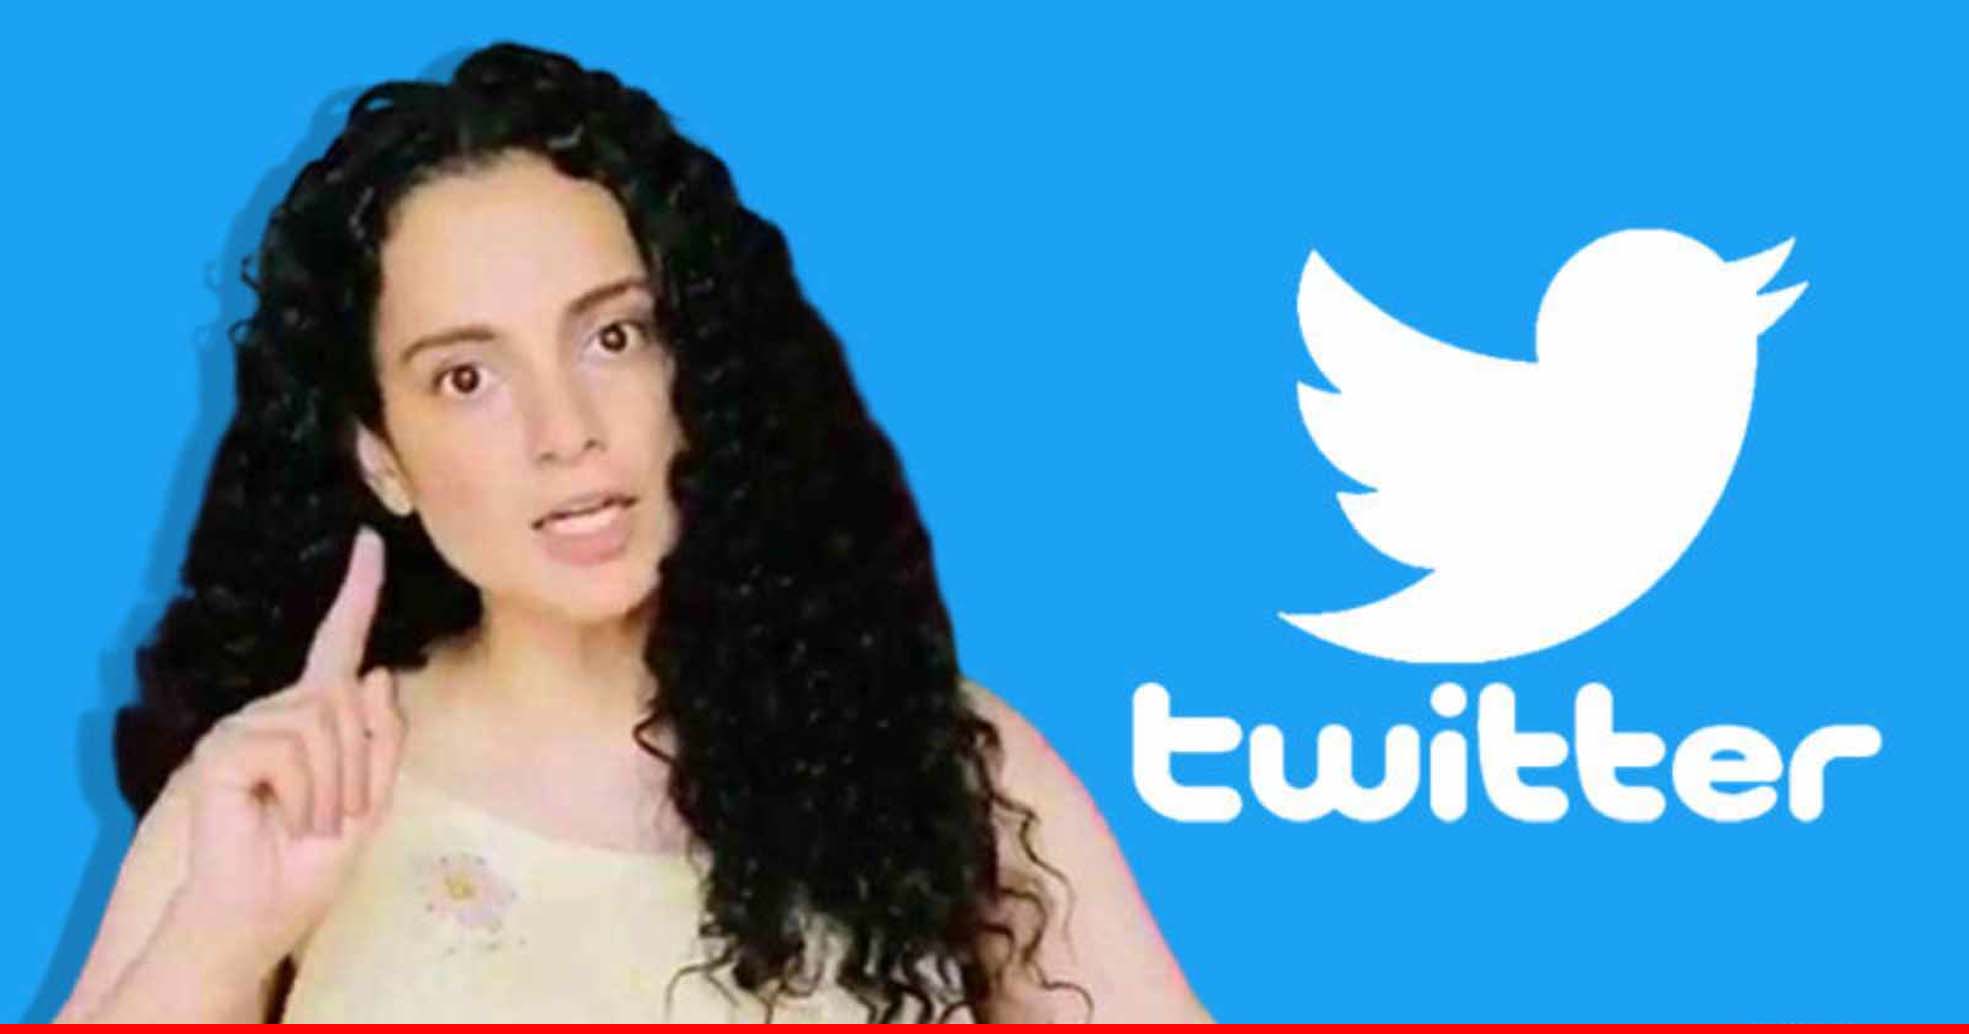 कंगना रनौत का ट्विटर अकाउंट सस्पेंड, बंगाल हिंसा के खिलाफ लगातार कर रही थीं ट्वीट्स